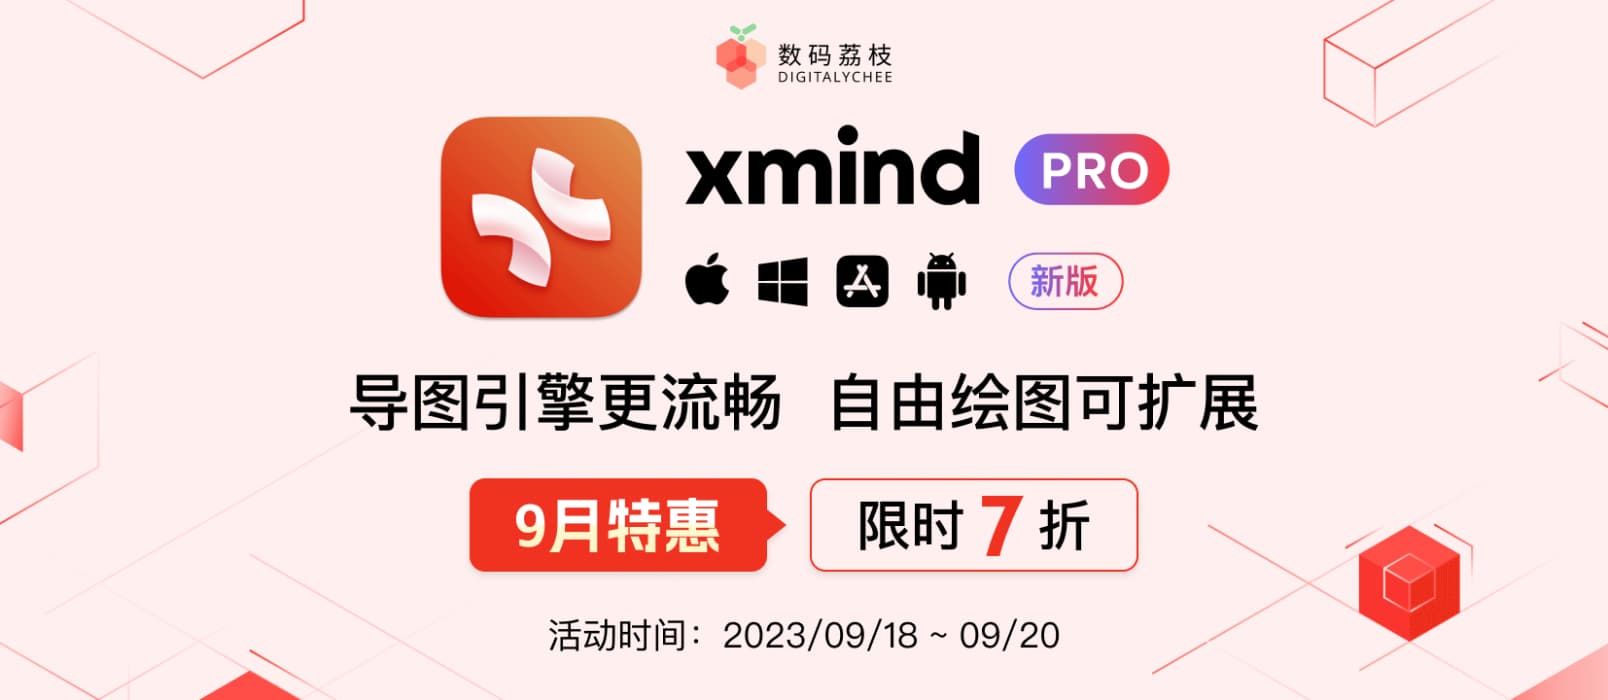 9 月特惠！Xmind Pro 2023 限时 7 折抢！ 17